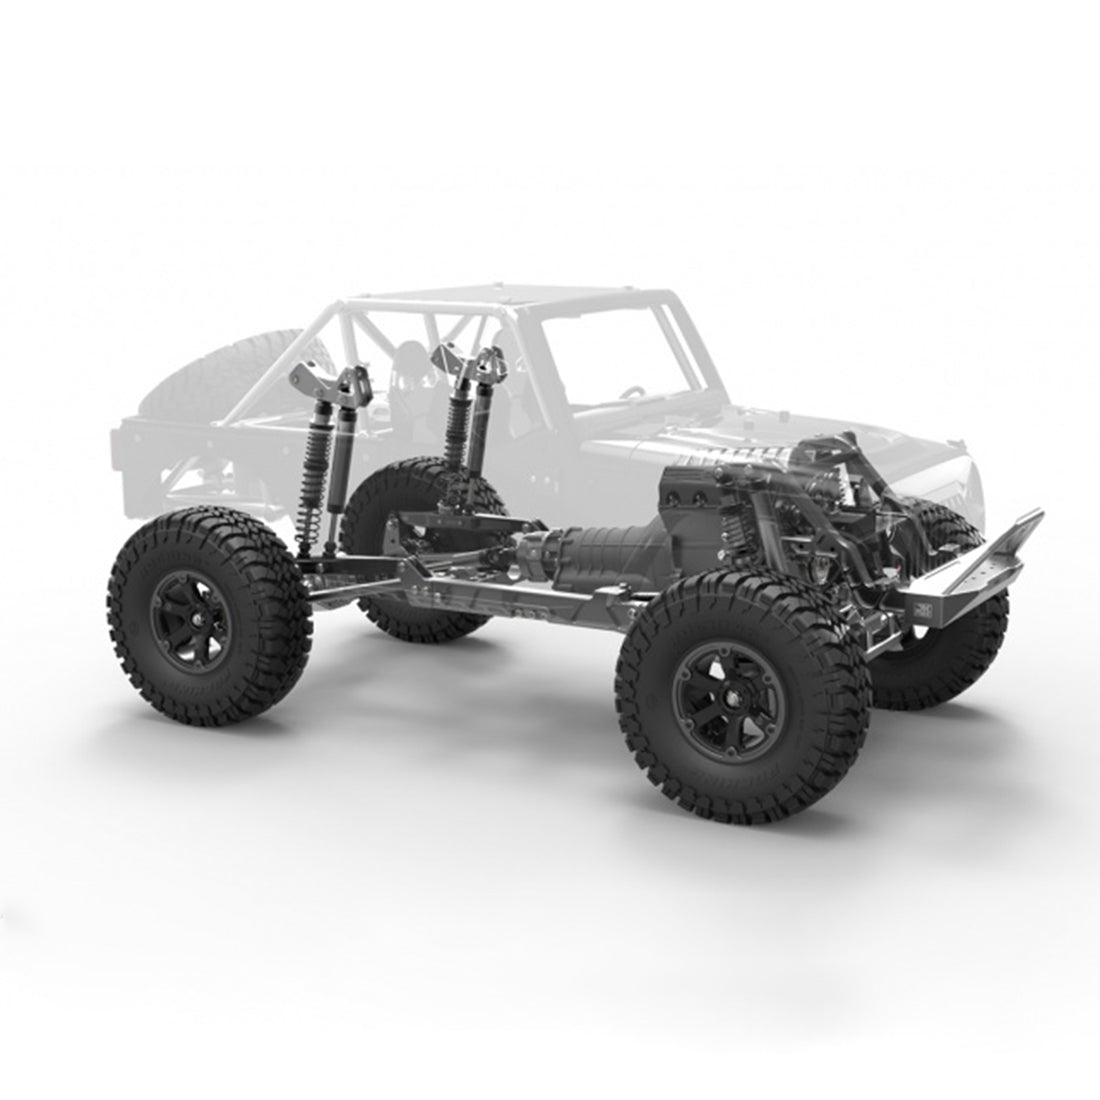 Capo JKMAX 1/10 Todo Metal DIY RC Coche sobre orugas simulado Modelo de vehículo todoterreno - Versión KIT (sin dispositivos electrónicos)